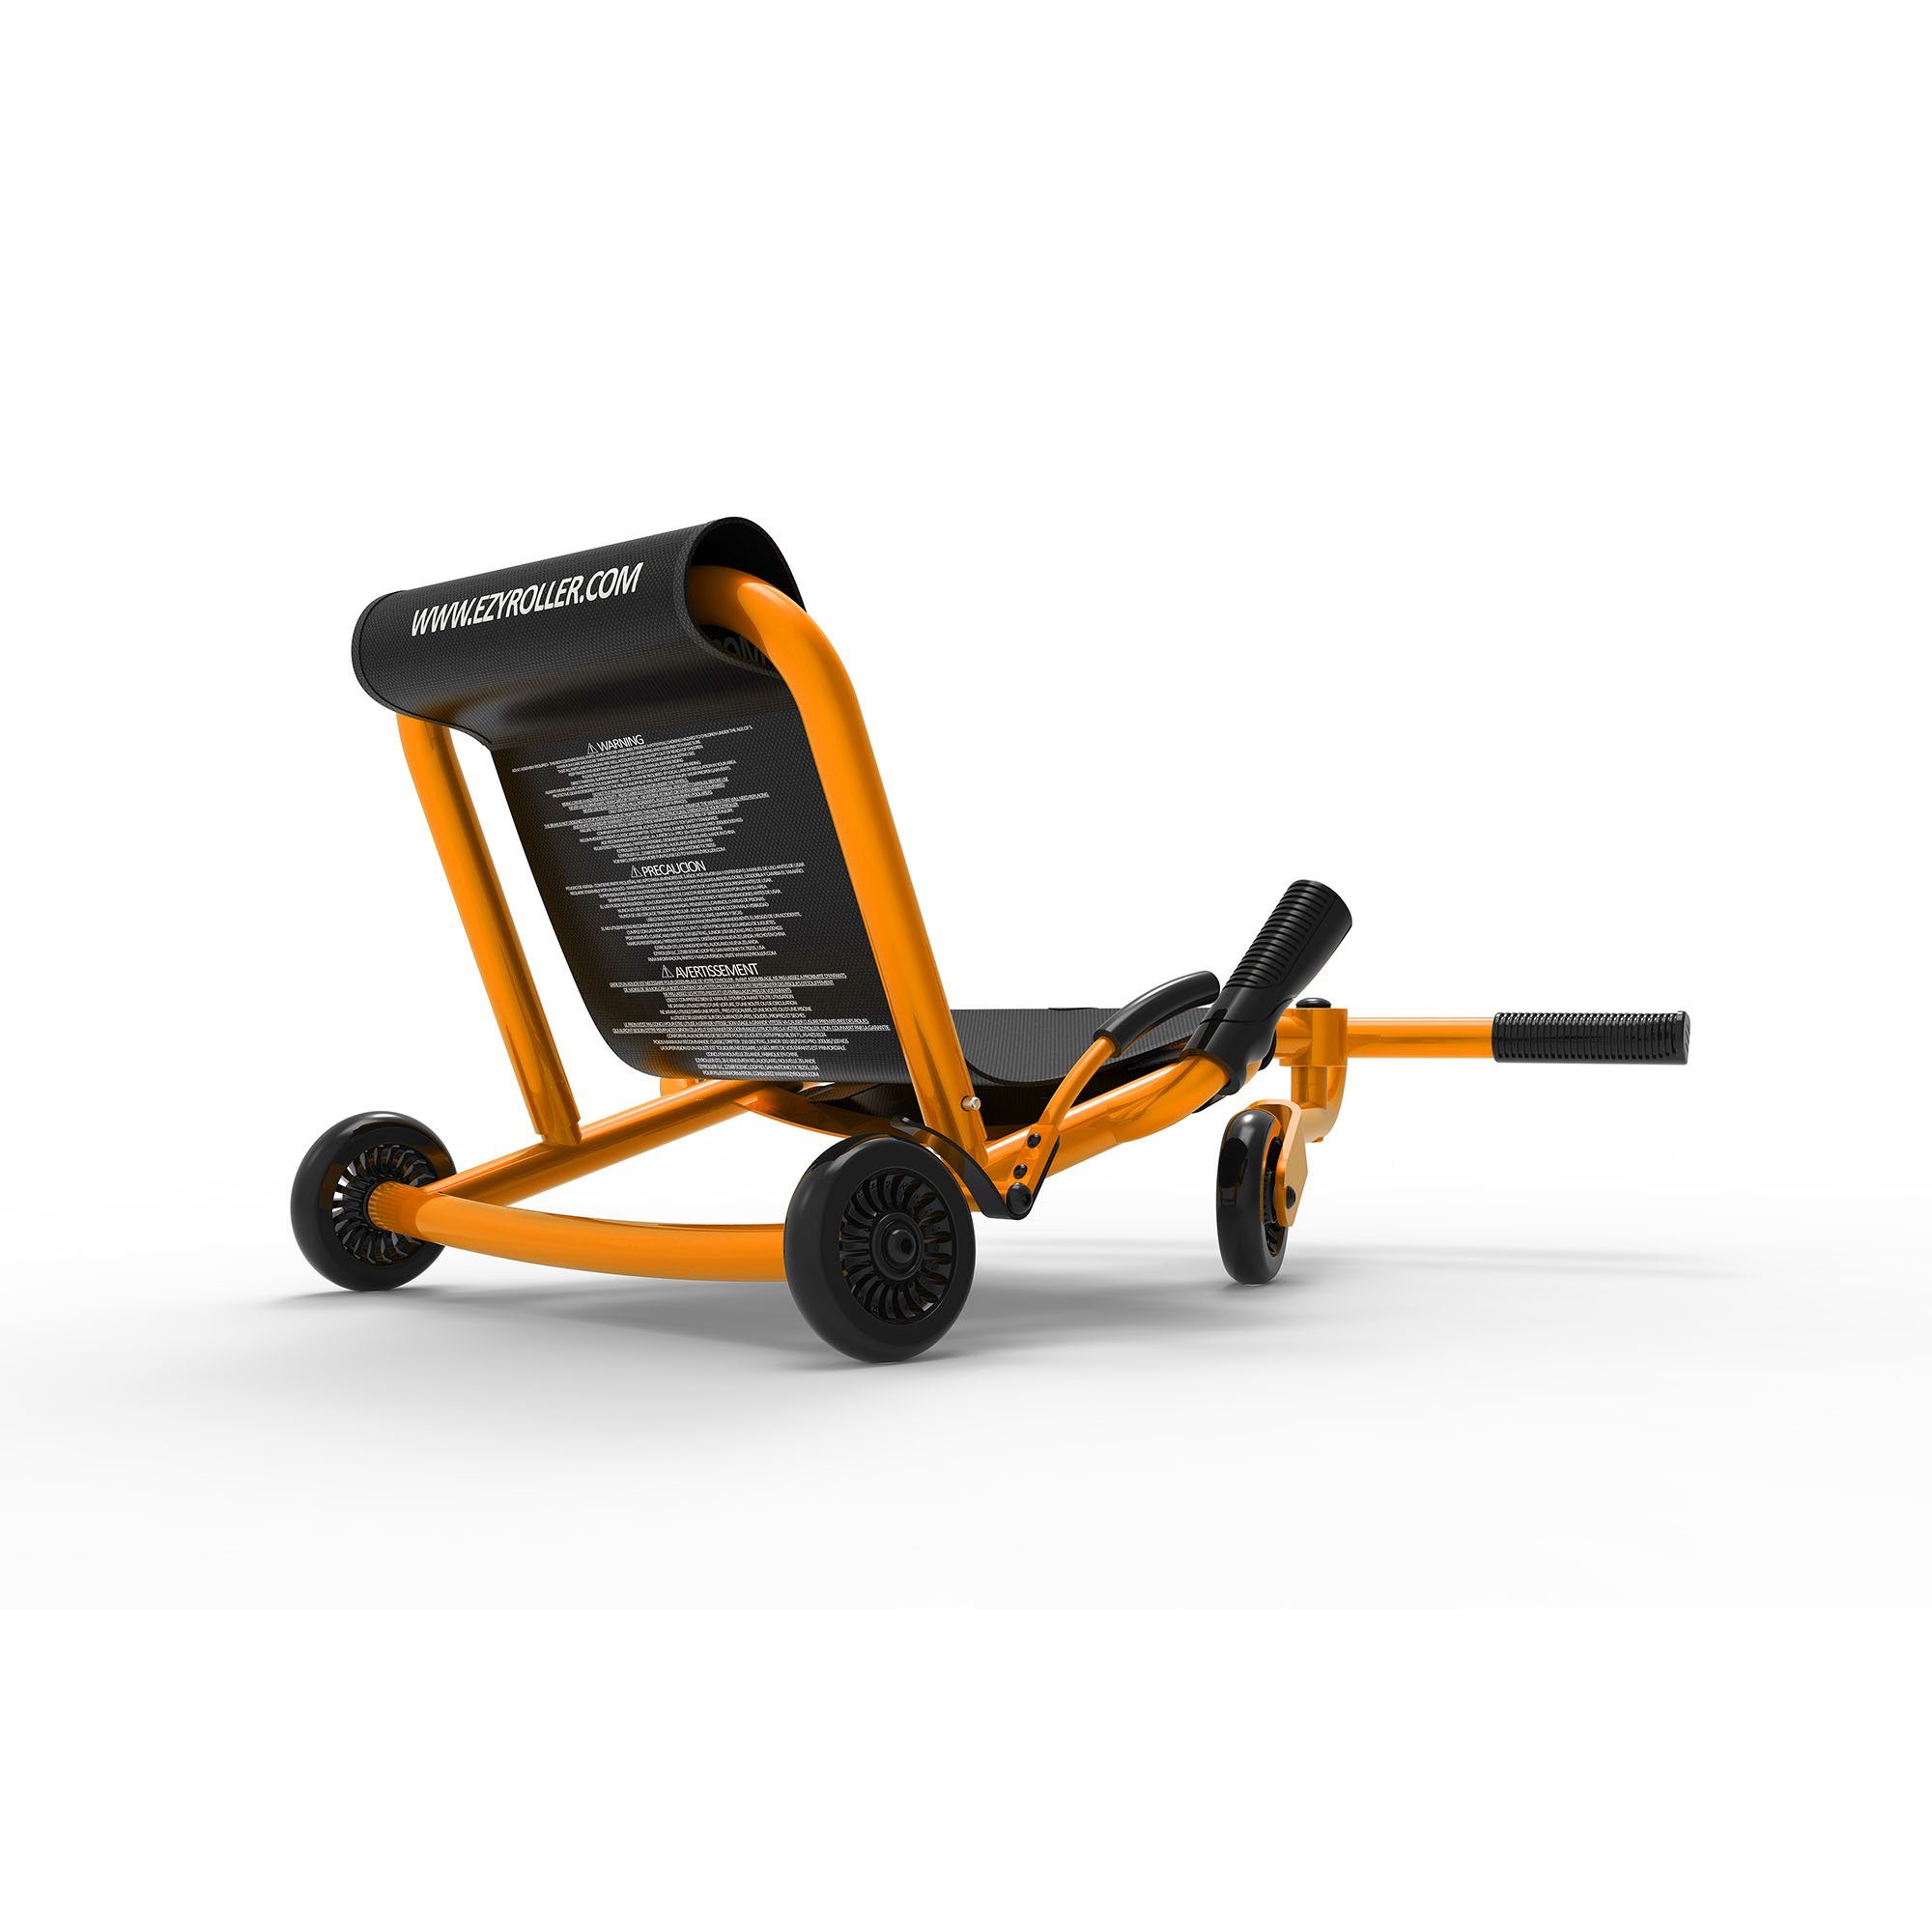 EzyRoller Dreiradscooter 14 orange Trike Kinder Jahre bis für Classic, Funfahrzeug Kinderfahrzeug 4 Dreirad ab